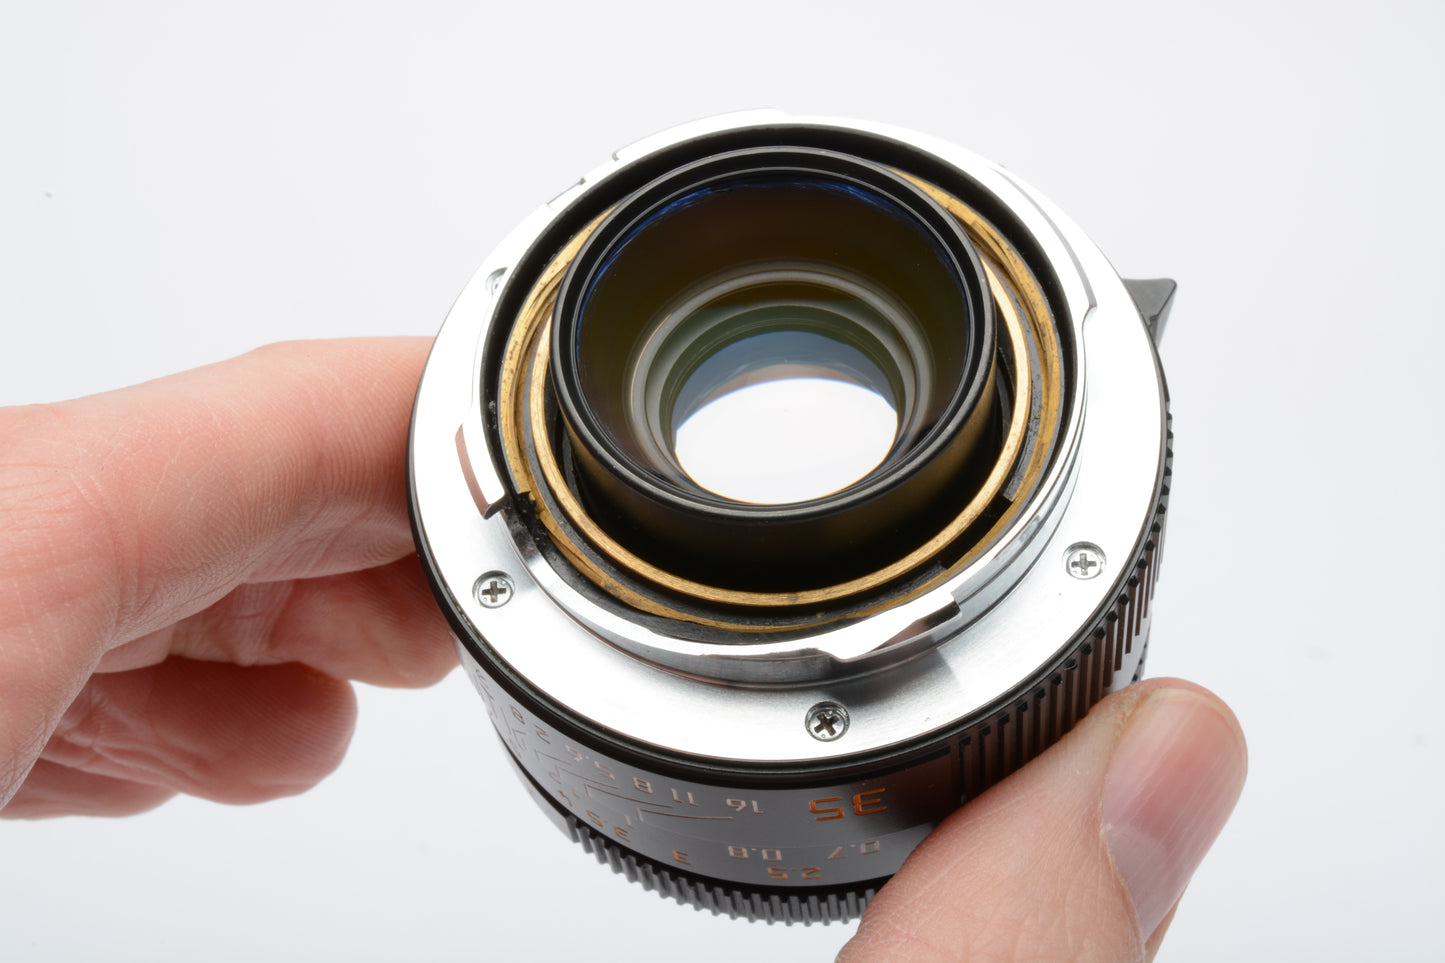 Leica 35mm f/2 Asph. Summicron-M Black Lens #11879, hood, caps, very clean